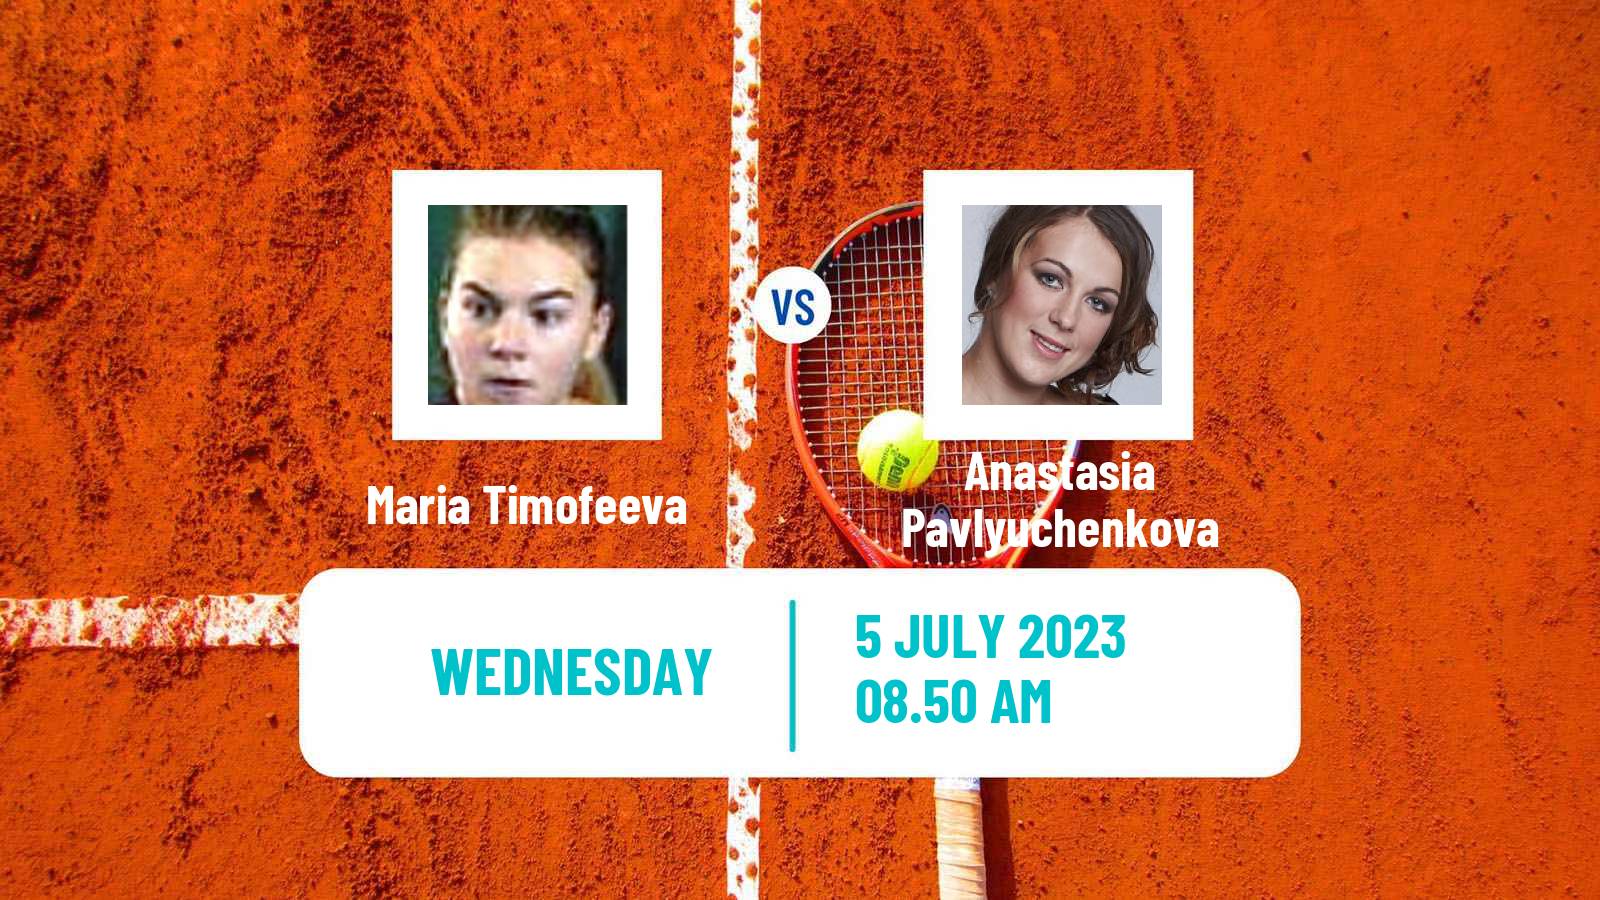 Tennis ITF W60 Montpellier Women Maria Timofeeva - Anastasia Pavlyuchenkova